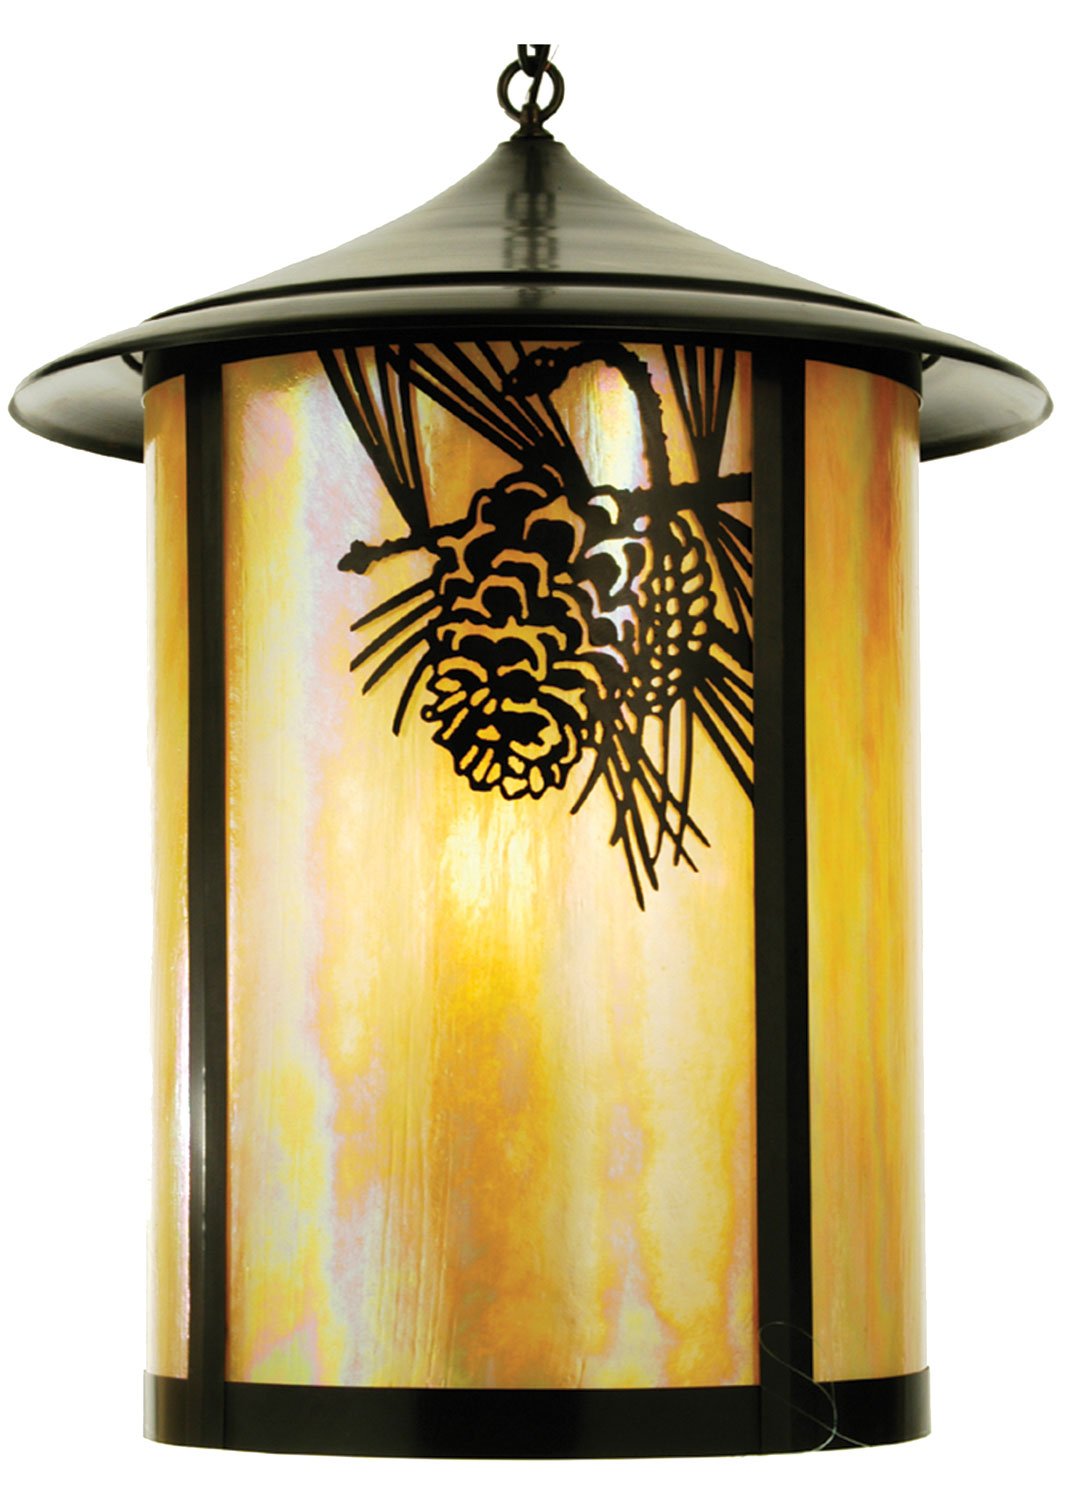 24"W Fulton Winter Pine Lantern Pendant